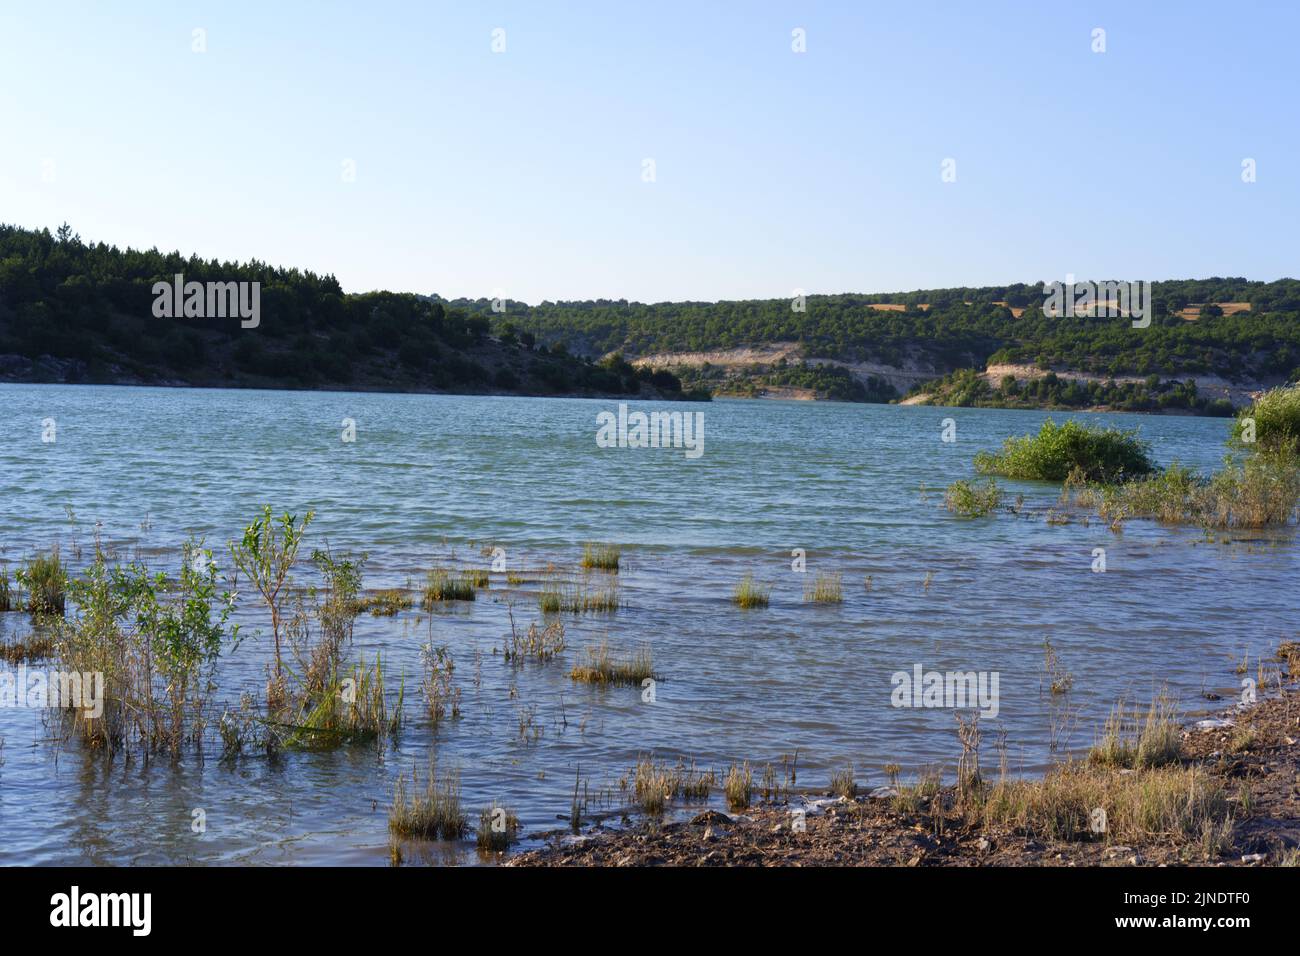 Alberi e piante sul lago Foto Stock